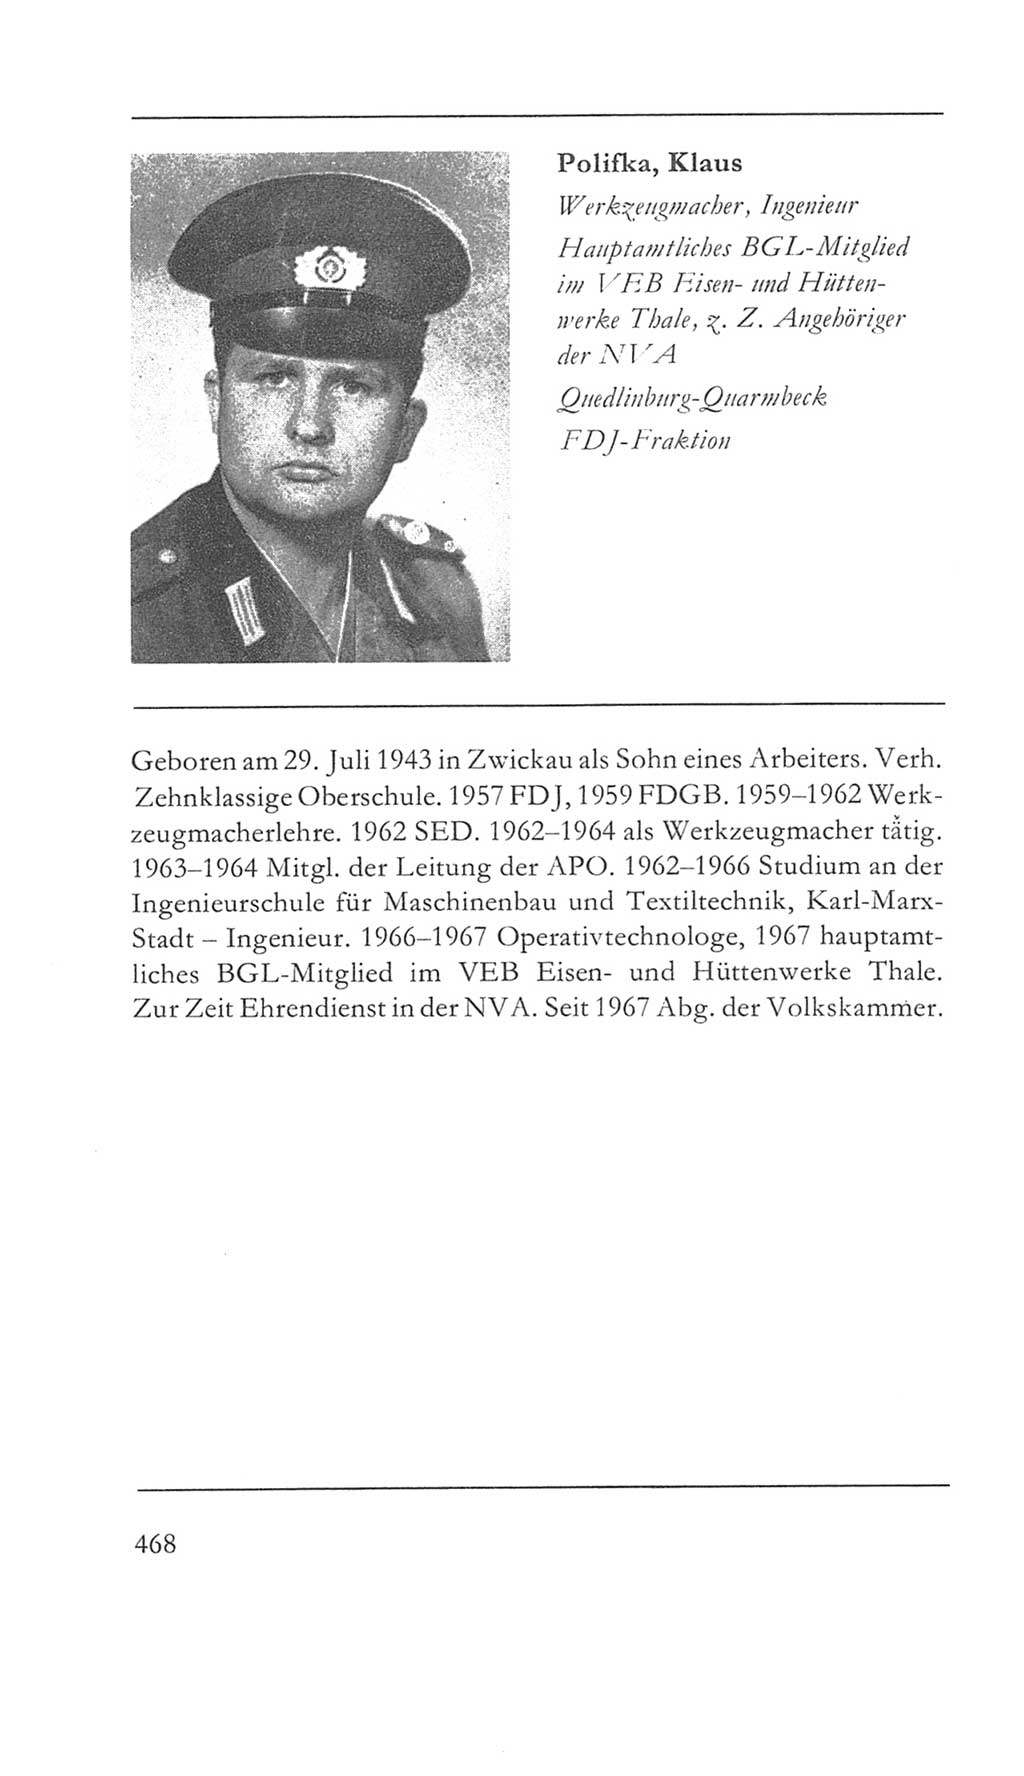 Volkskammer (VK) der Deutschen Demokratischen Republik (DDR) 5. Wahlperiode 1967-1971, Seite 468 (VK. DDR 5. WP. 1967-1971, S. 468)